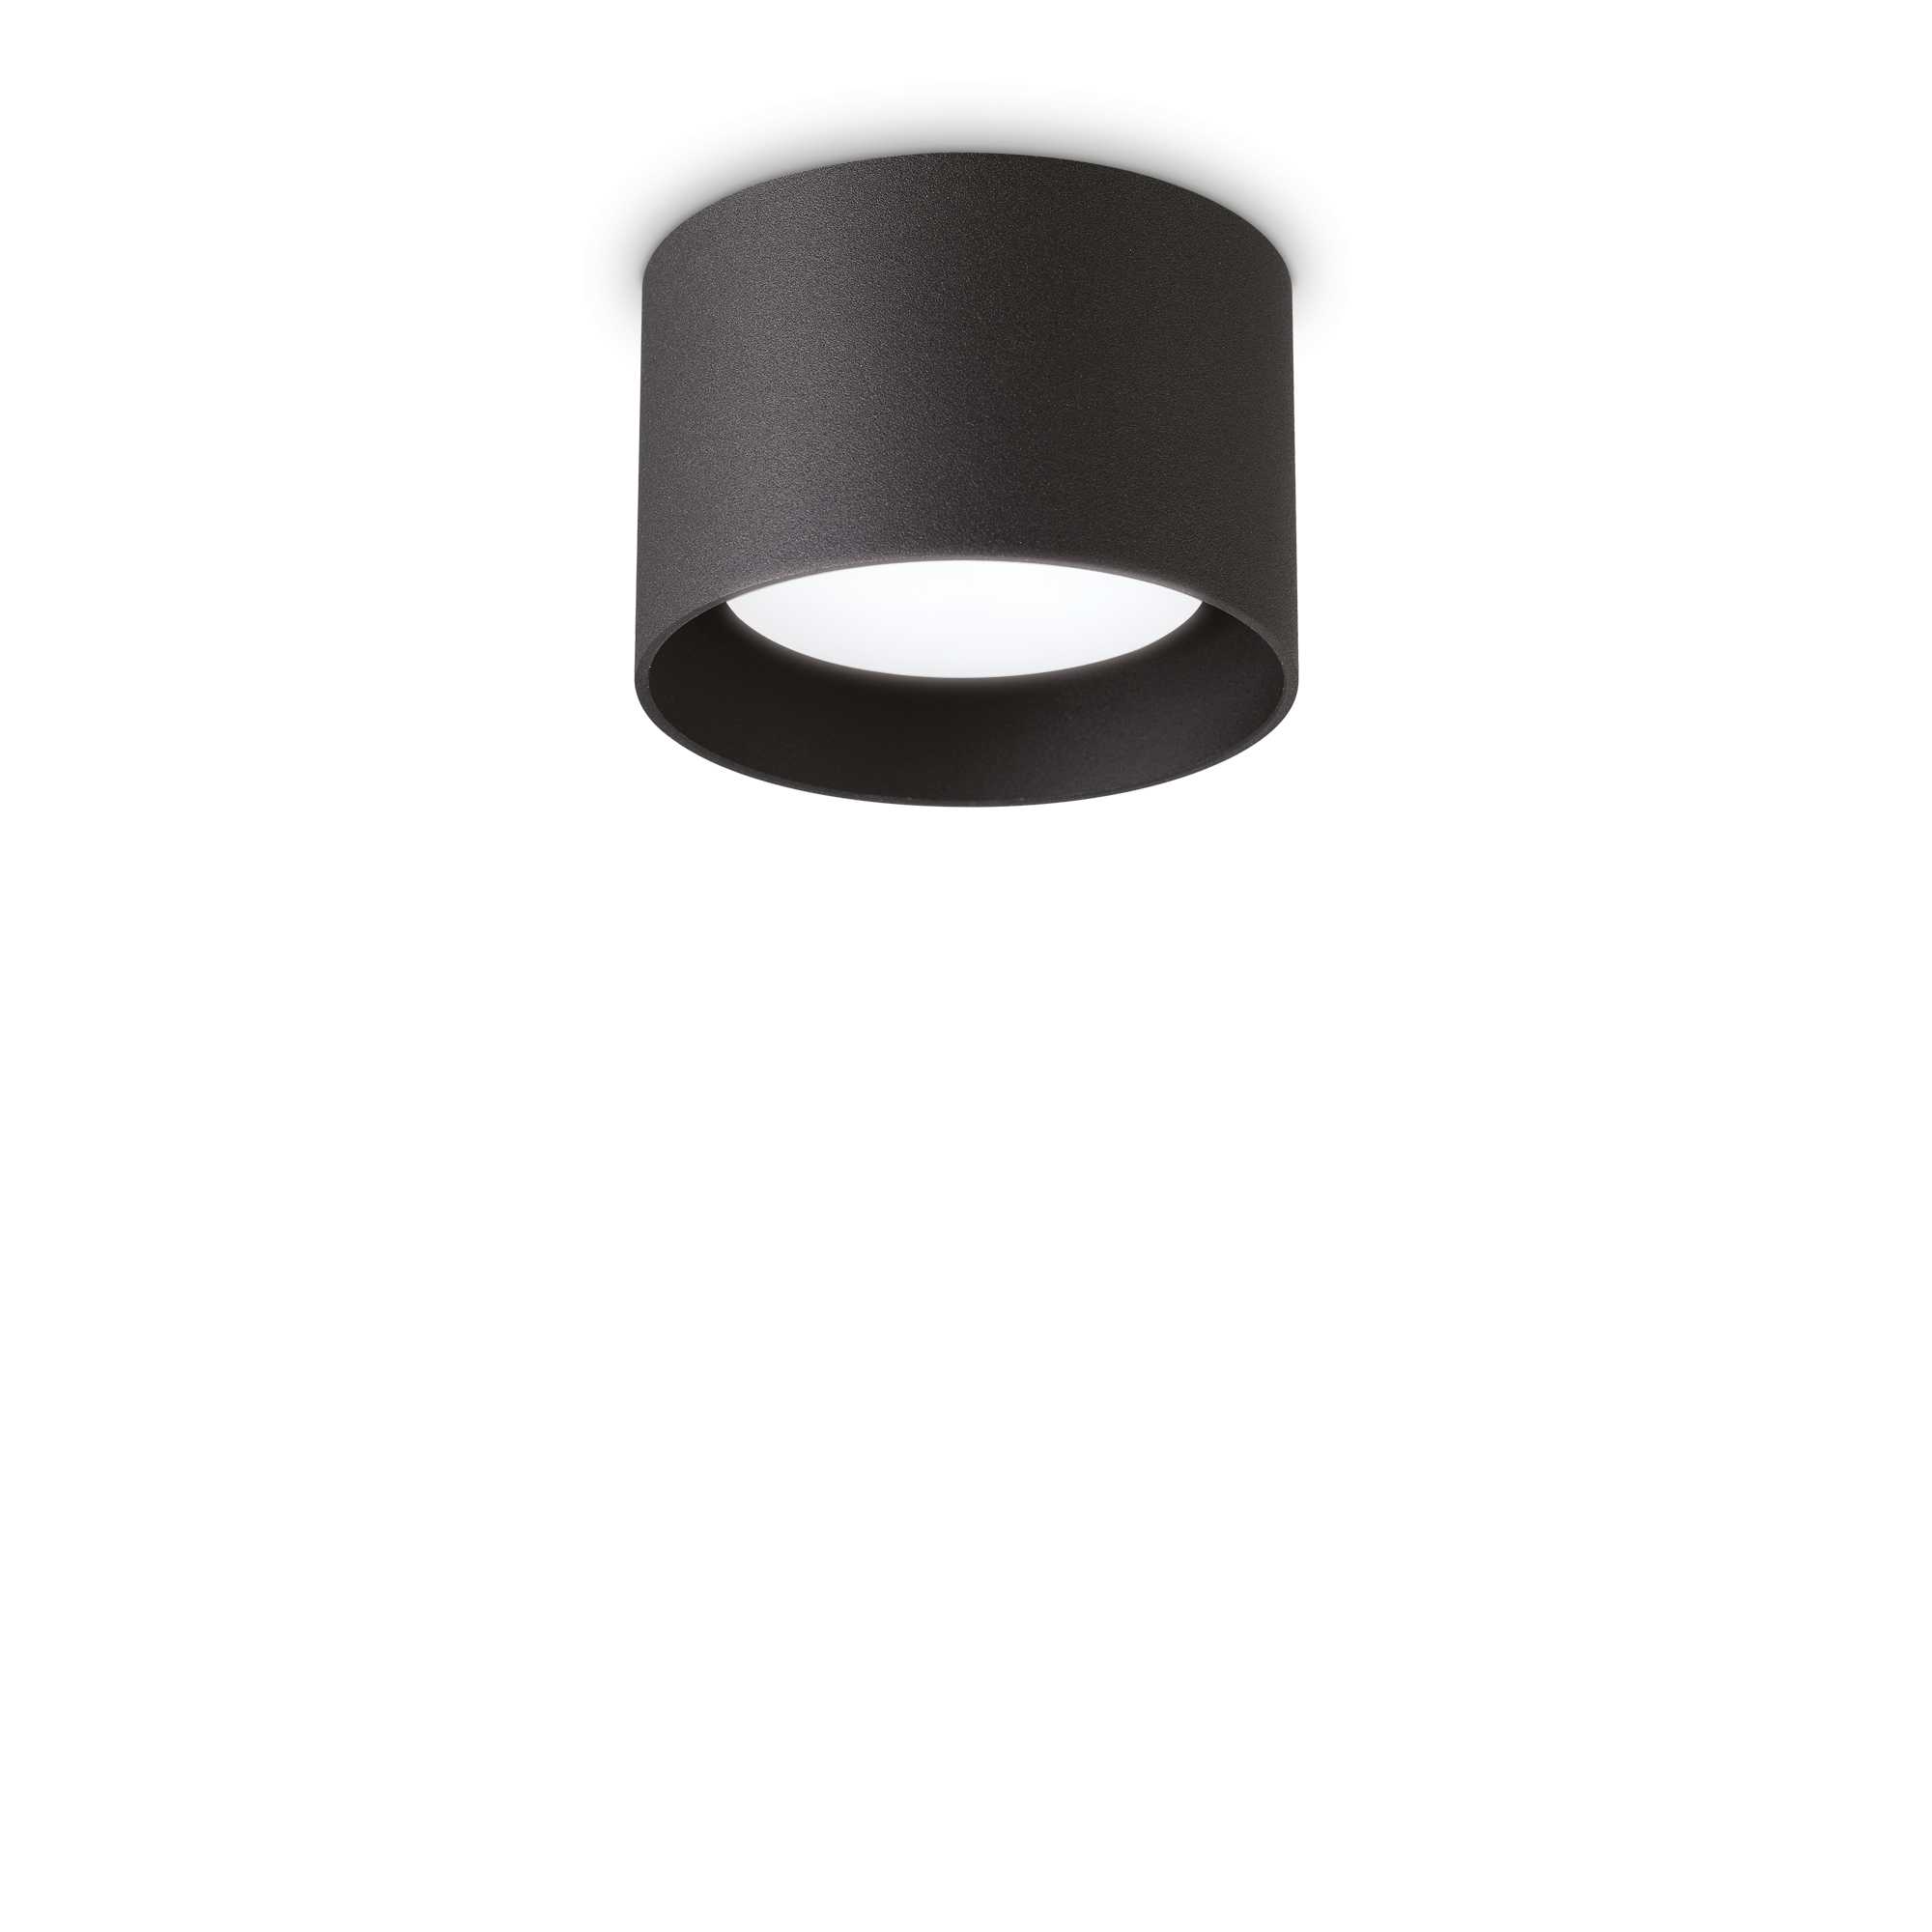 AD hotelska oprema Stropna lampa Spike pl1- okrugla crna slika proizvoda